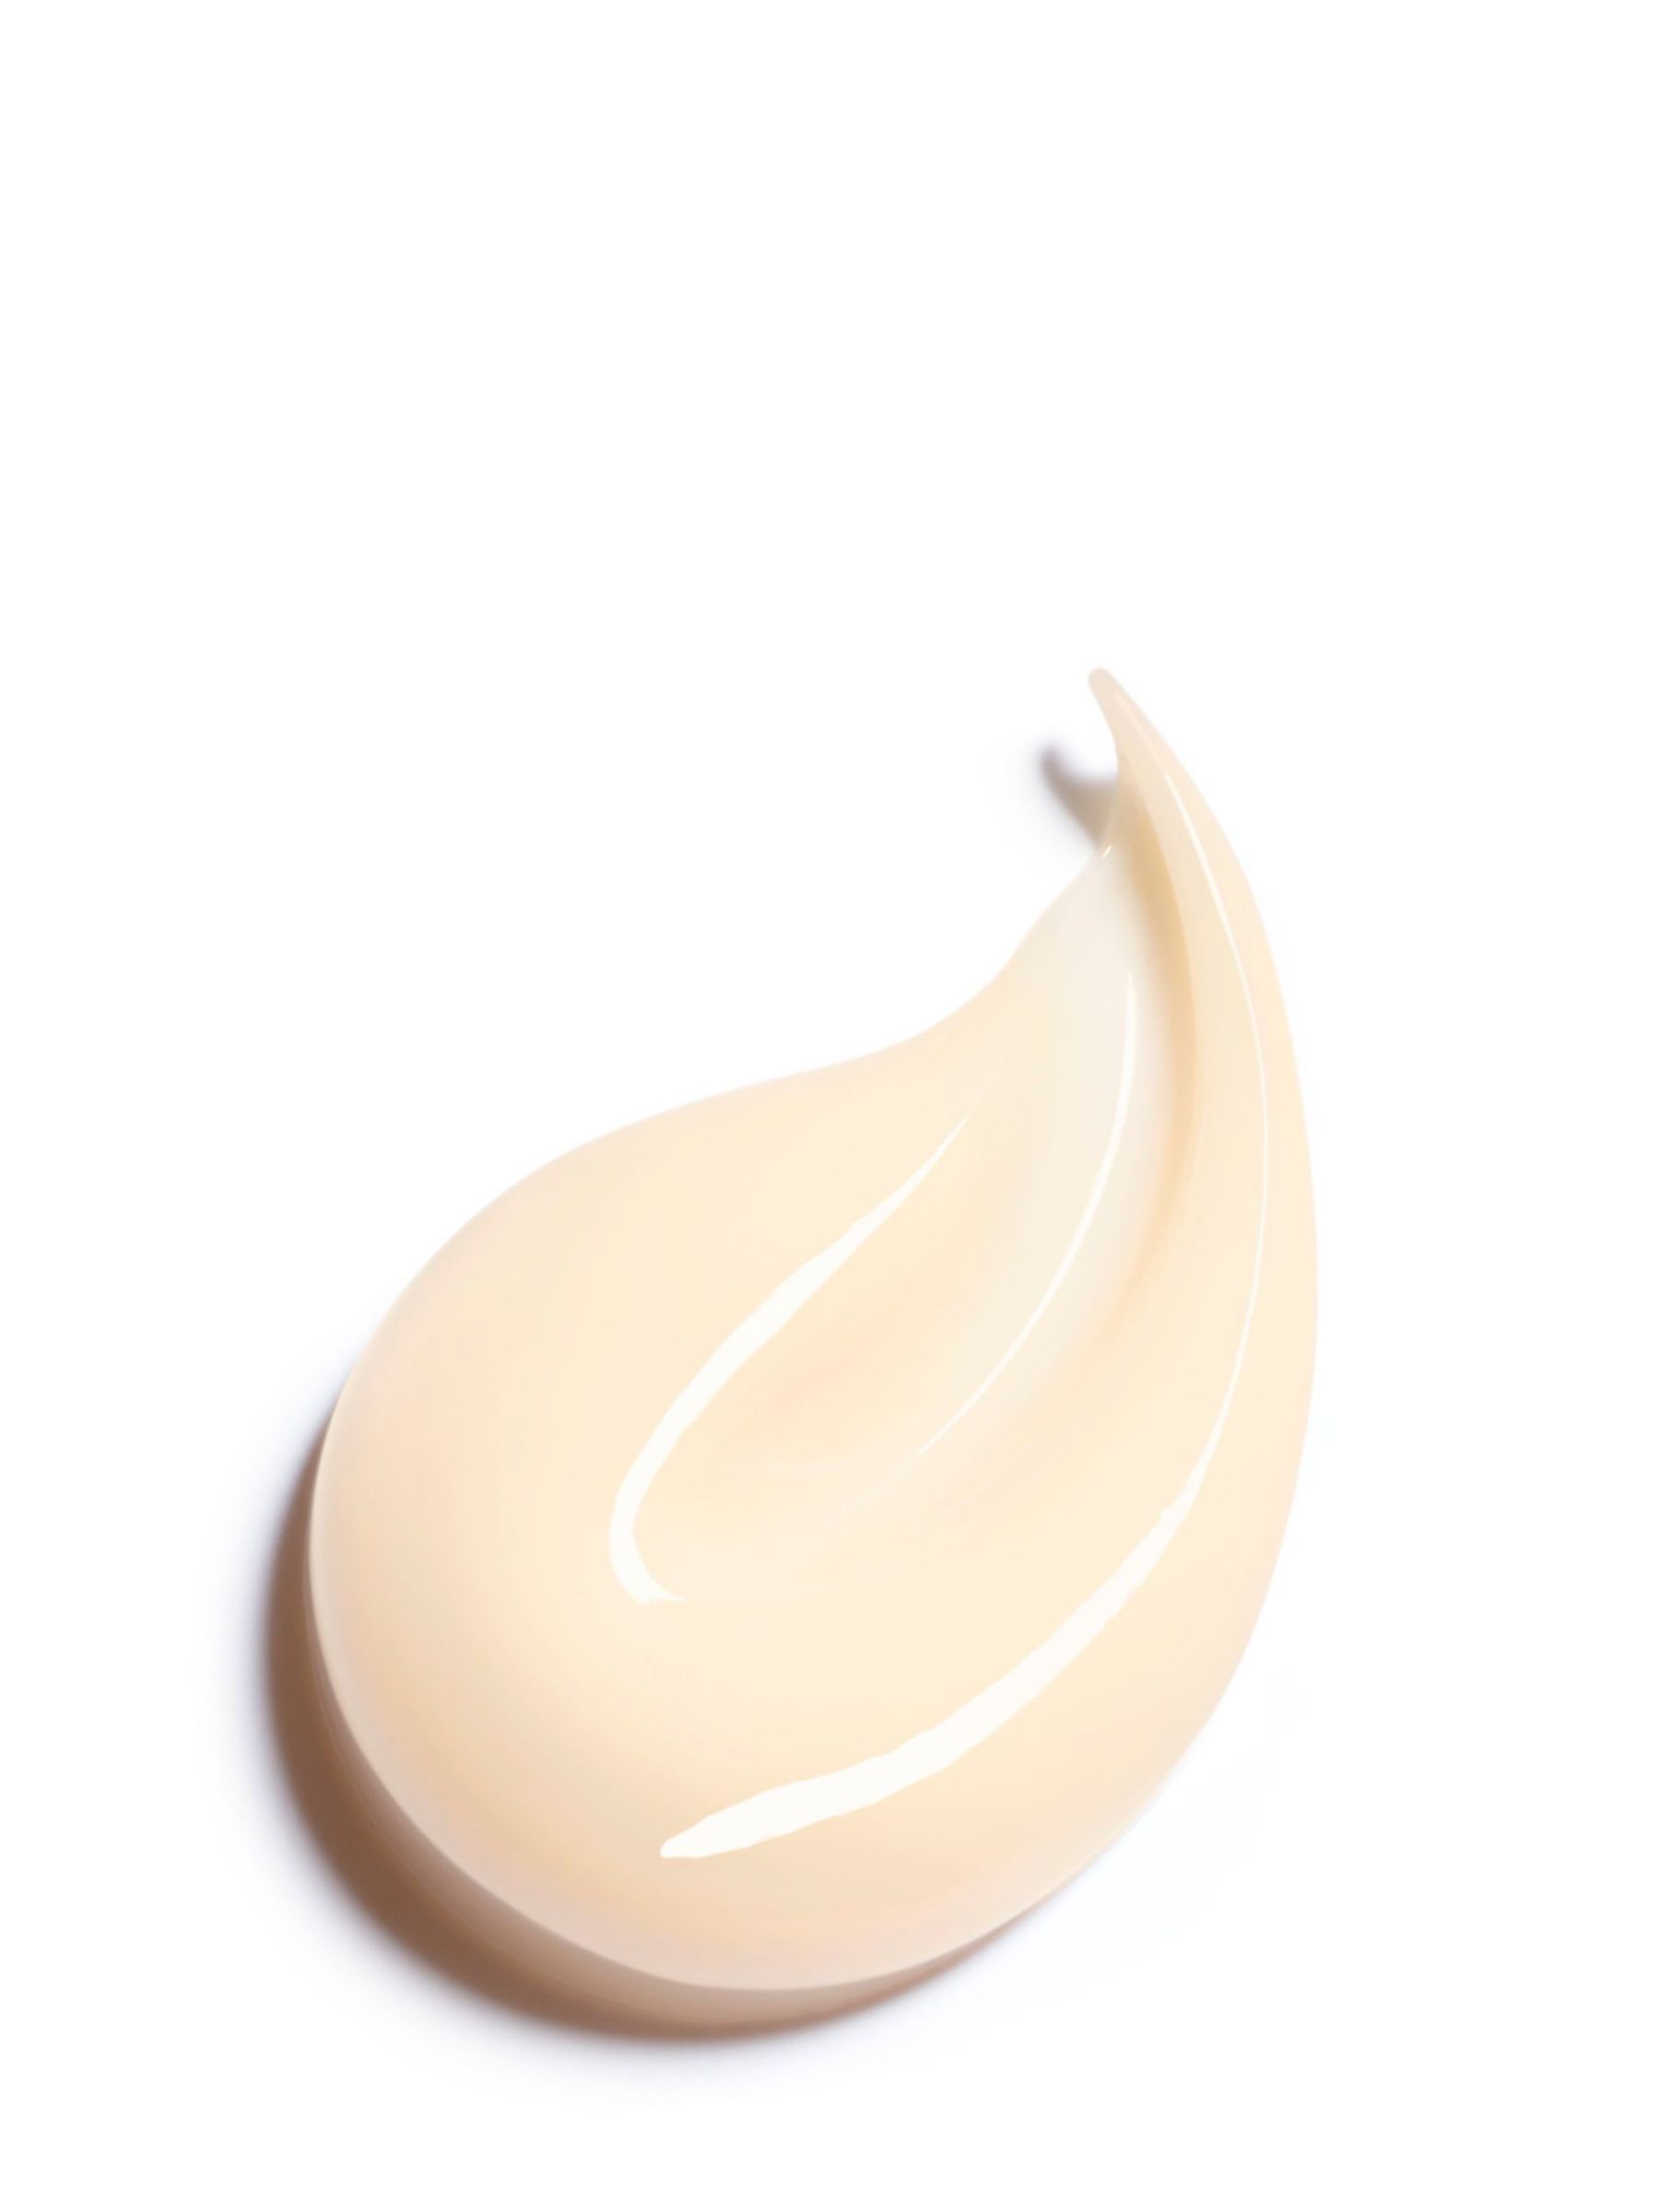 CHANEL Sublimage La Crème Texture Fine Ultimate Cream, 50g 2